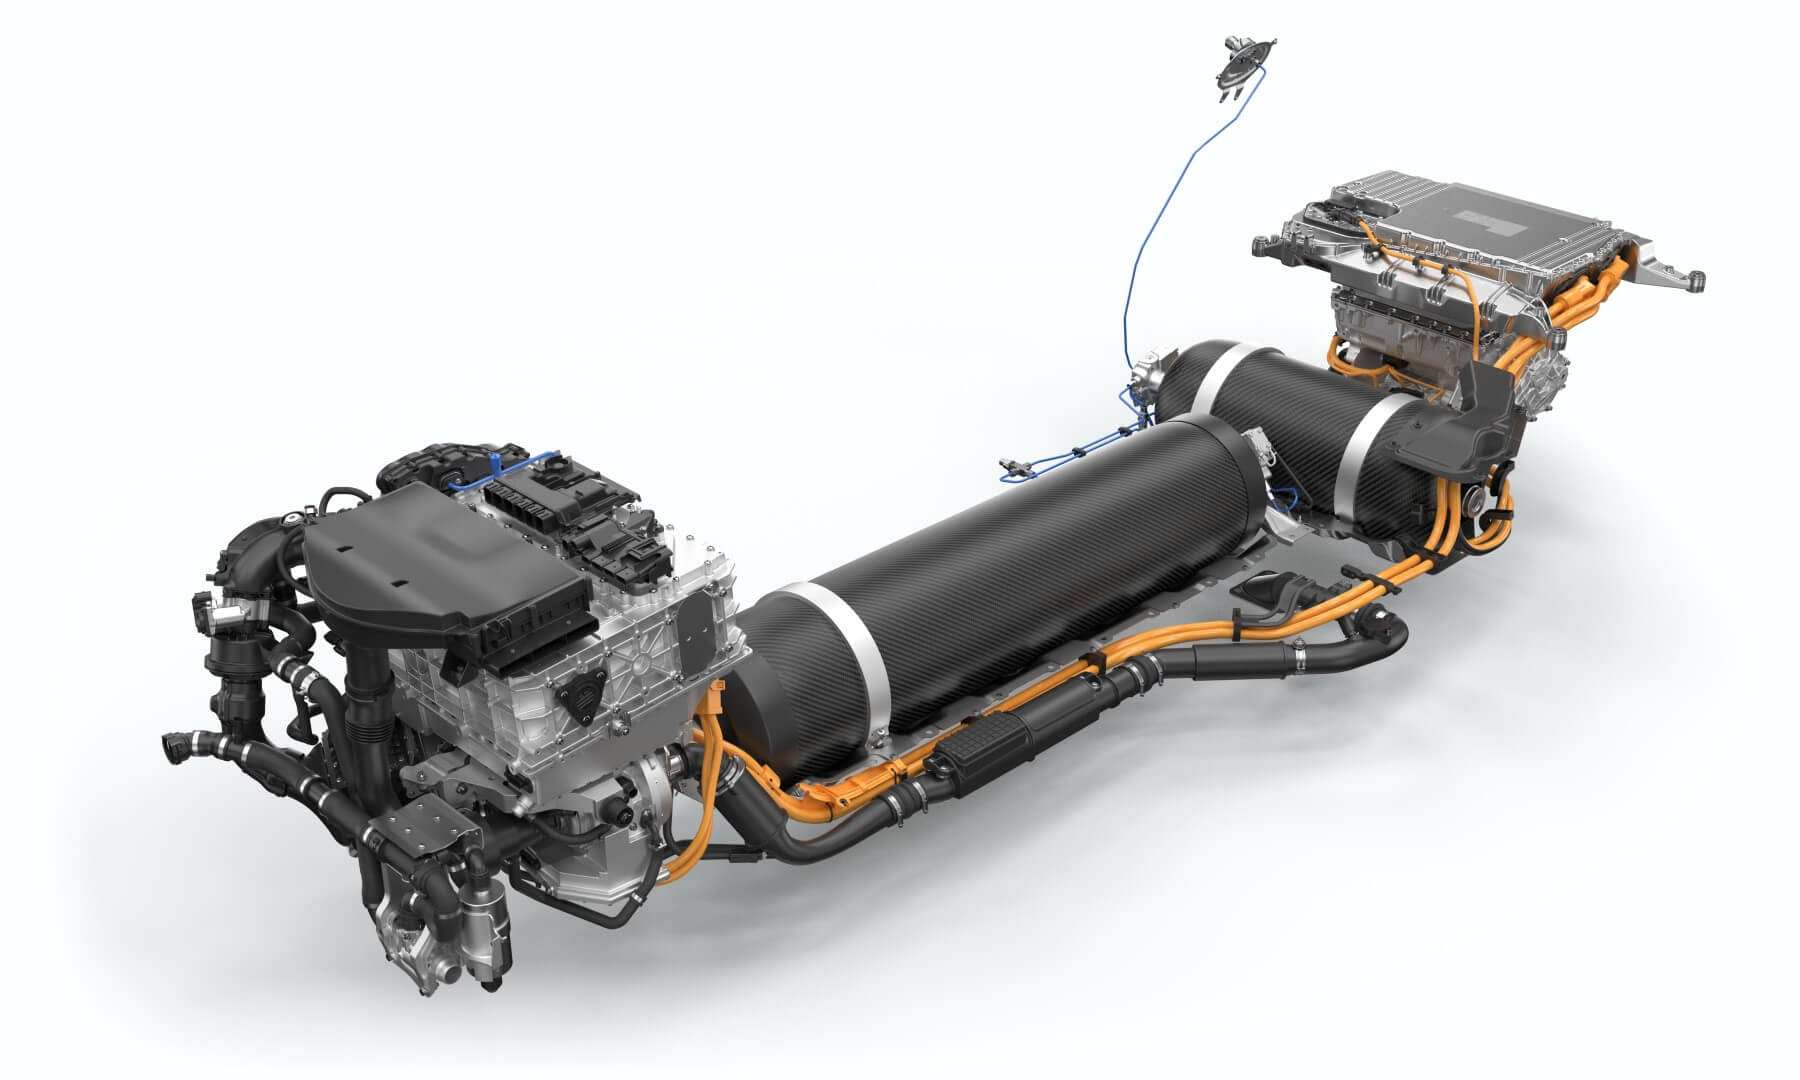 Hydrogen Powered BMWs